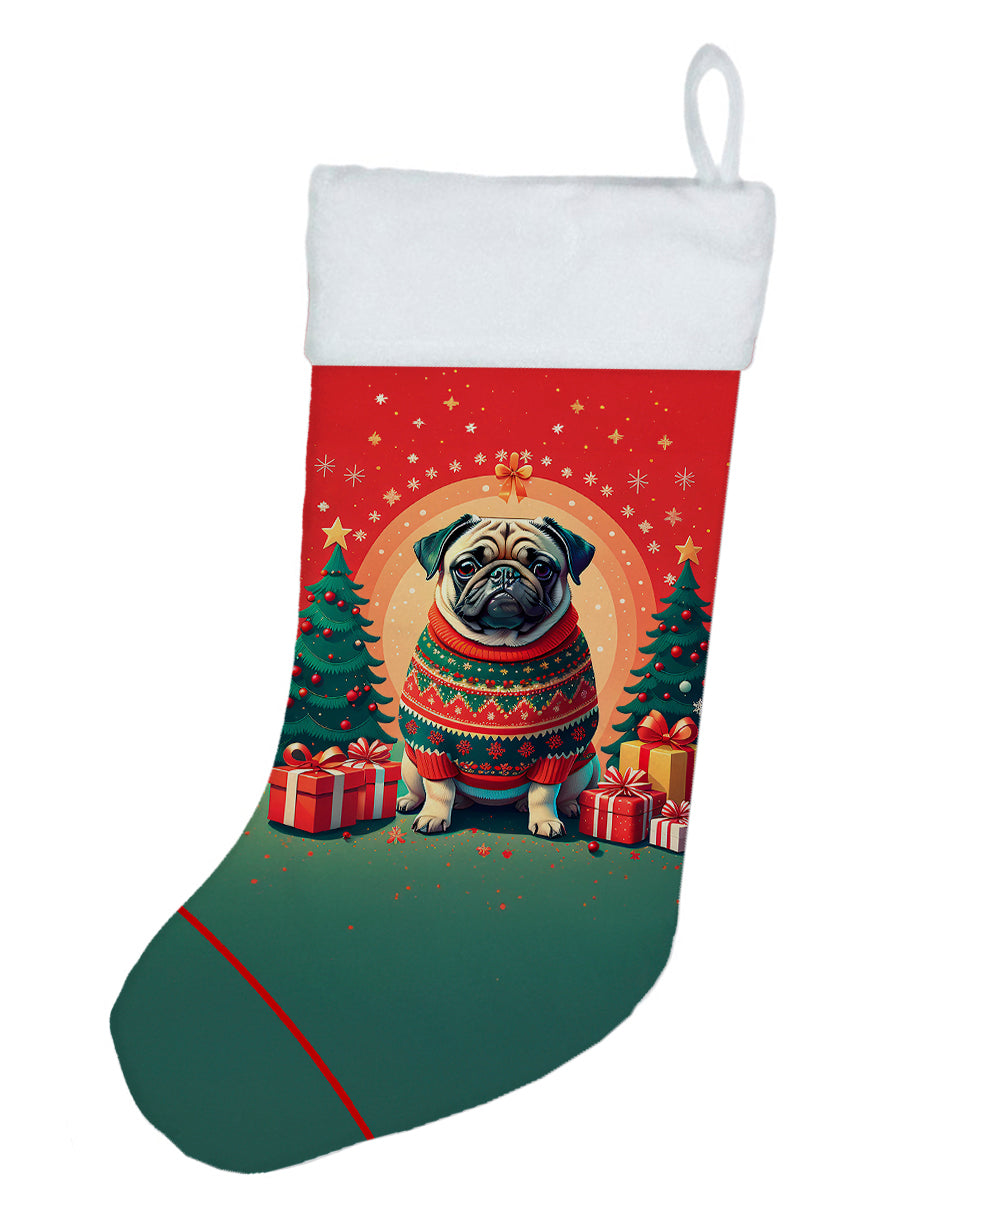 Buy this Fawn Pug Christmas Christmas Stocking